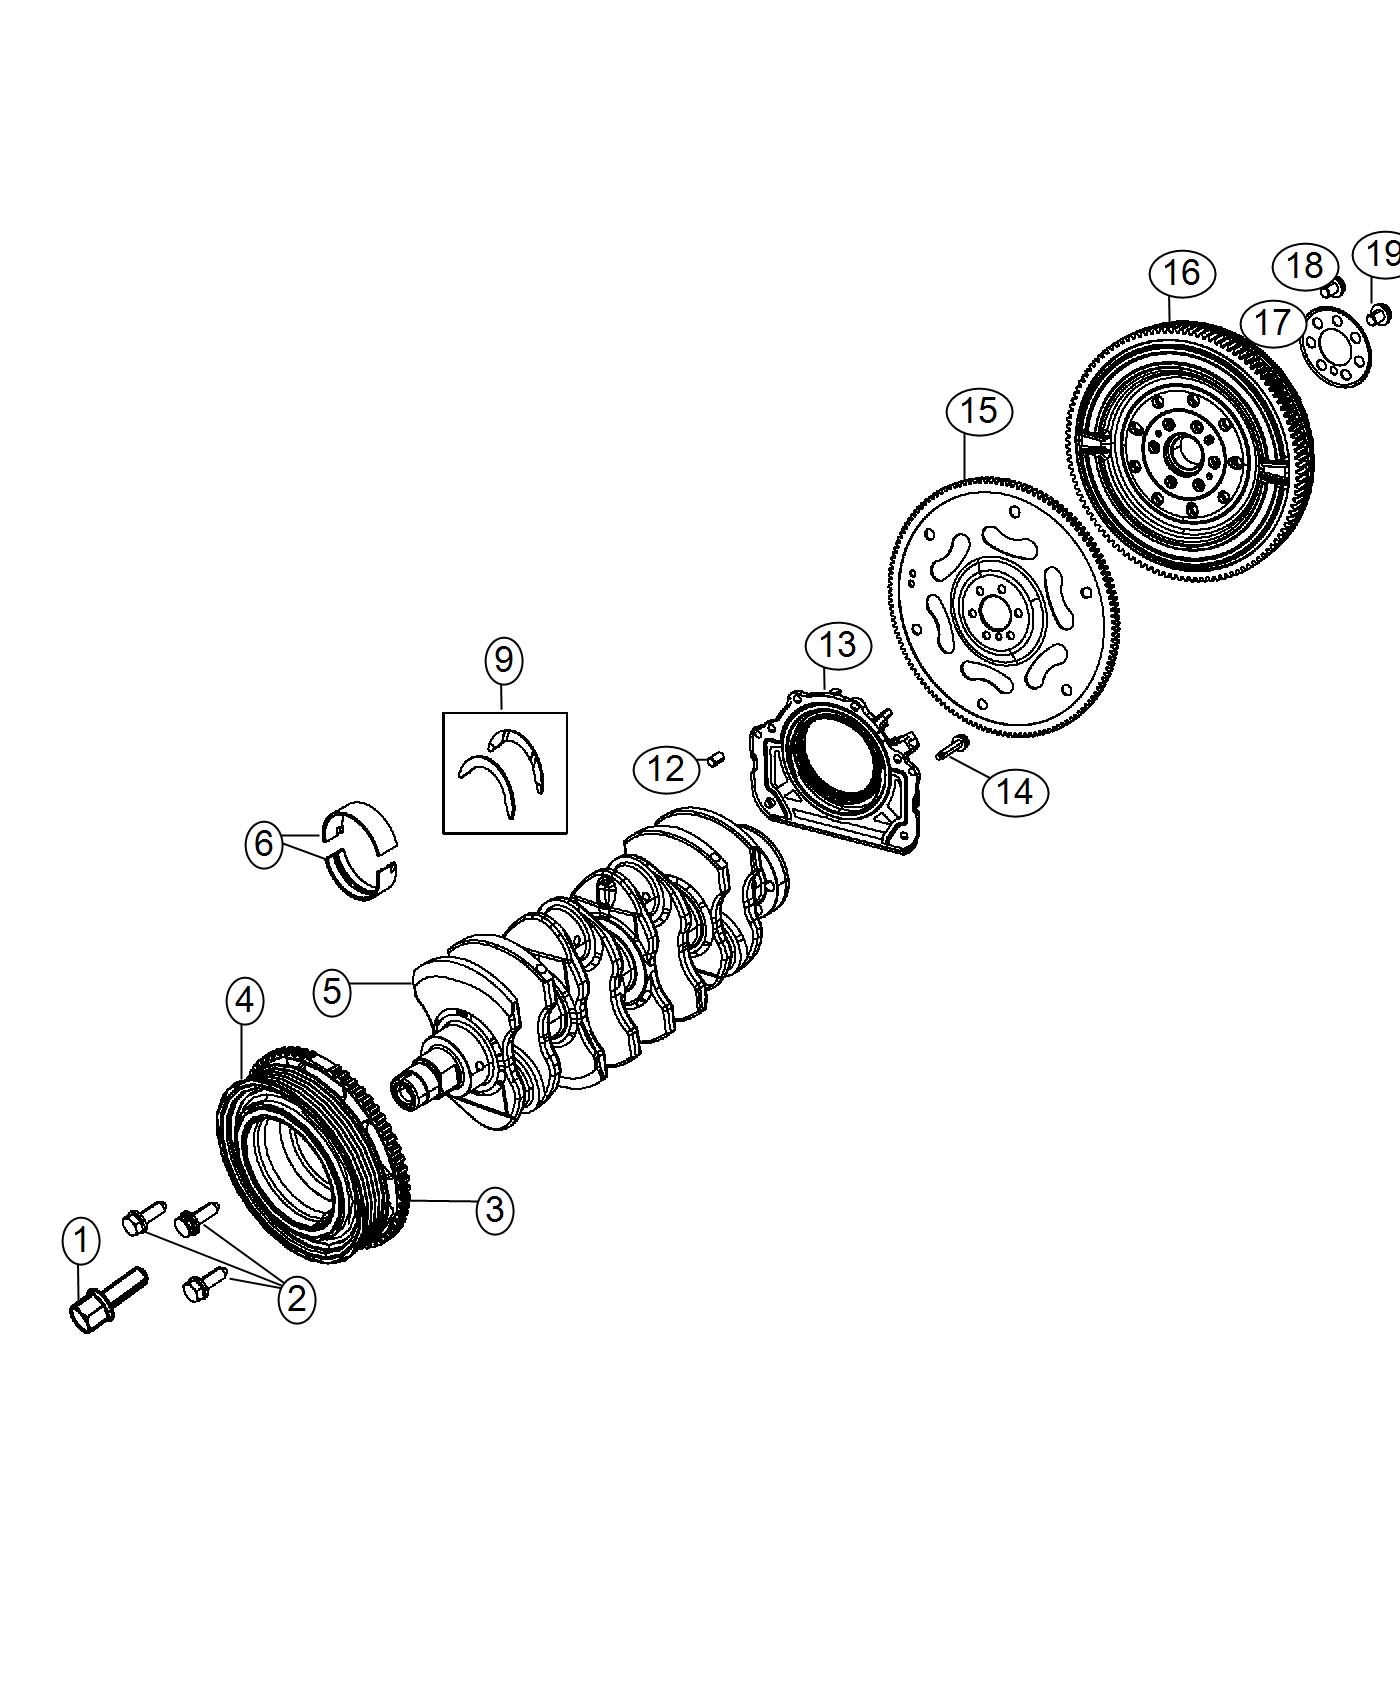 Crankshaft, Crankshaft Bearings, Damper And Flywheel 1.4L. Diagram